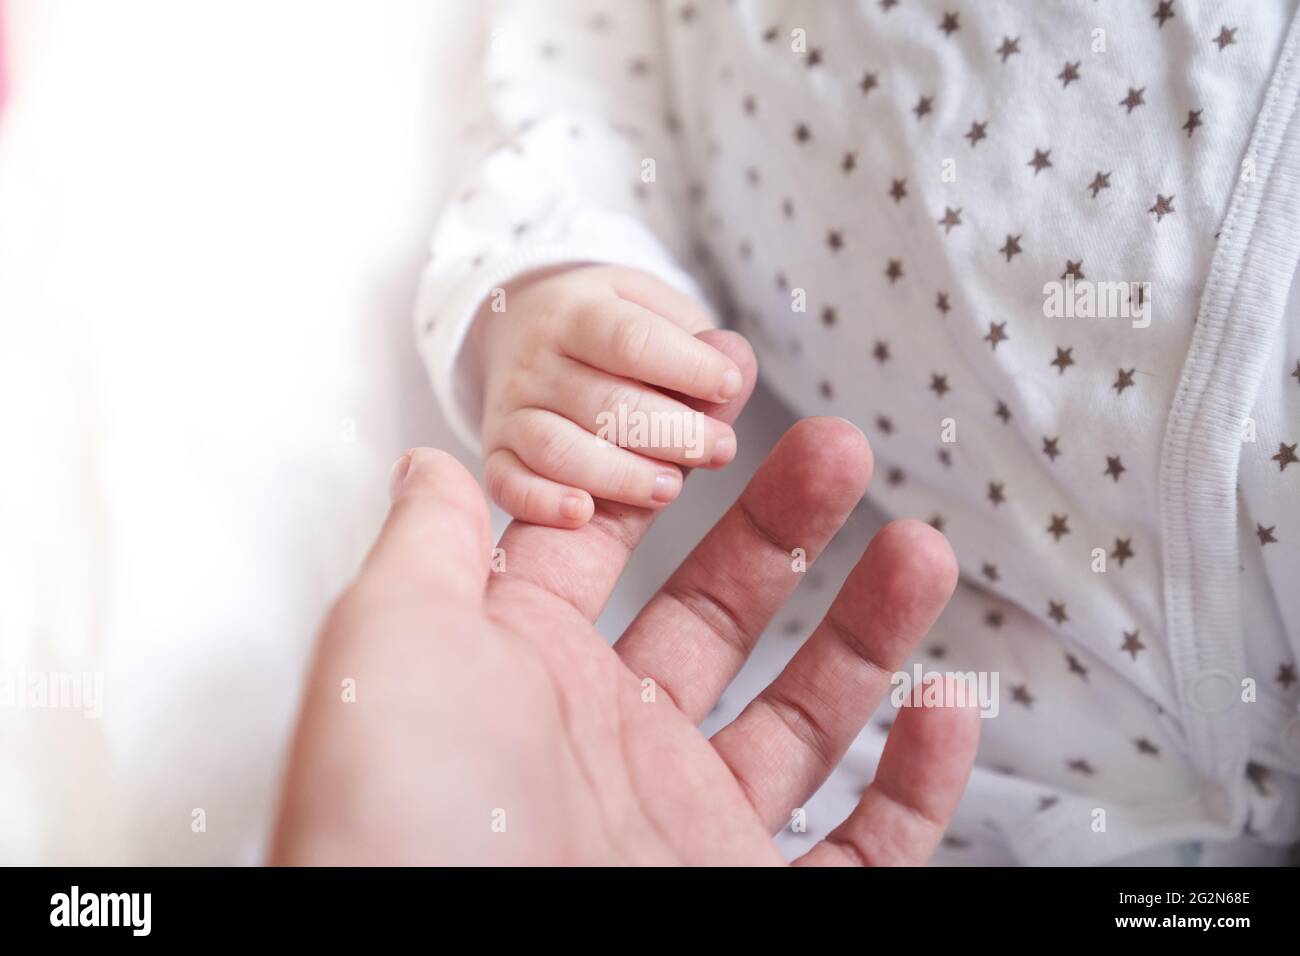 La mano delle madri che tiene la mano del bambino. Il bambino ha un mese. Carino mano piccola con le dita piccole. Concetto di amore e di cura di fondo. Foto di alta qualità Foto Stock